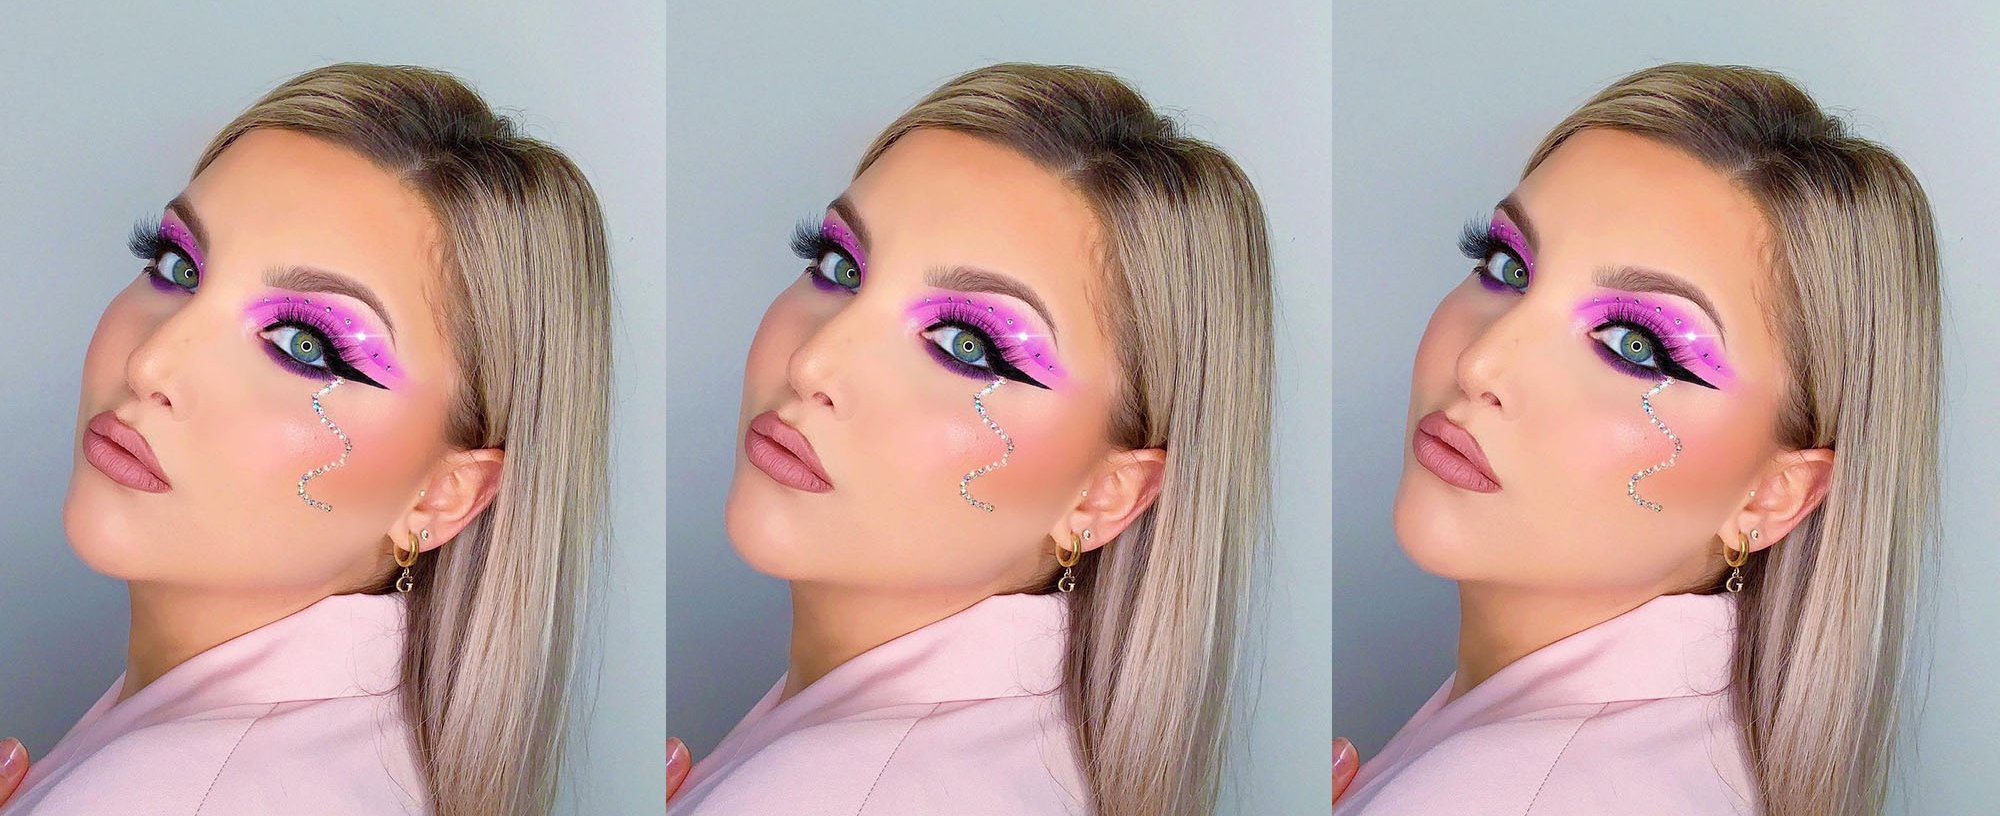 DIY Halloween MakeUp with Eyeliner: Simple tricks to create Genius